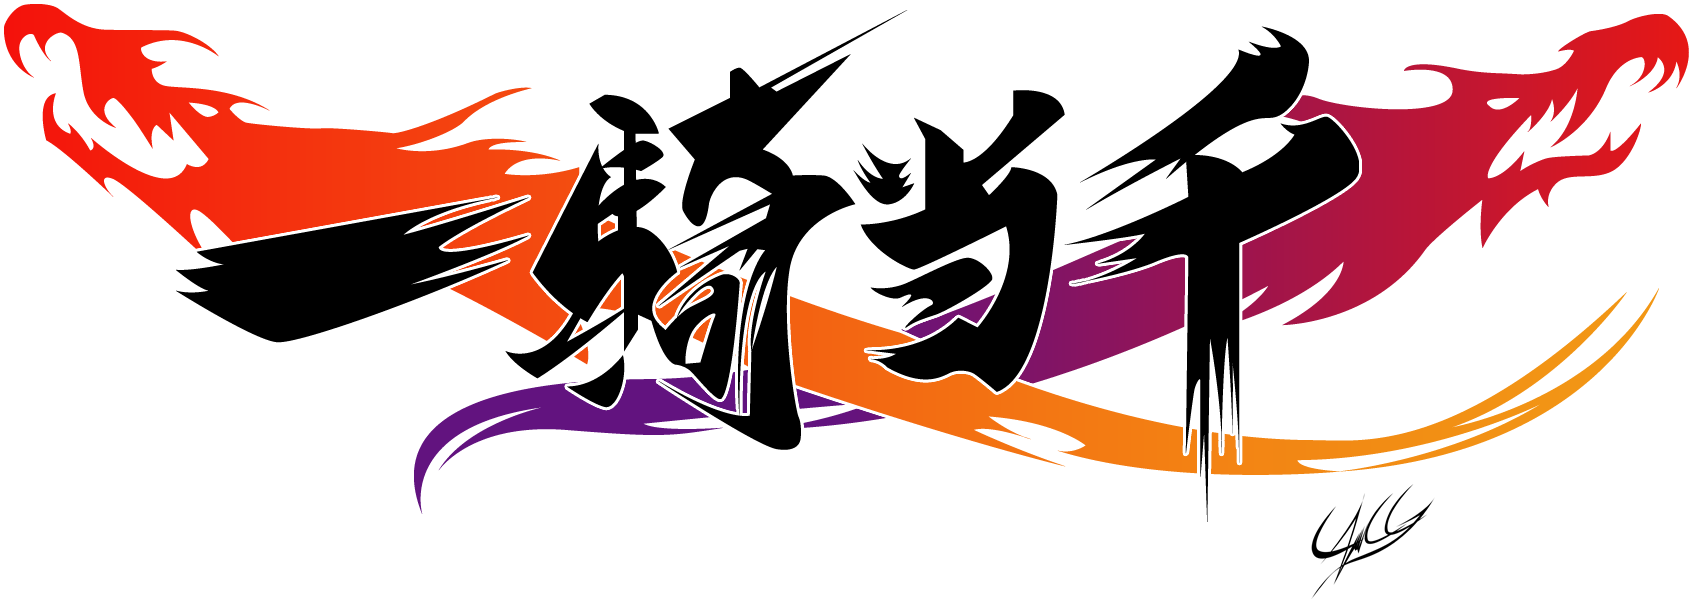 Ikki Tousen Xcross Impact Logo By Ponychaos13 - Ikki Tousen Xross Impact Logo Clipart (1754x654), Png Download